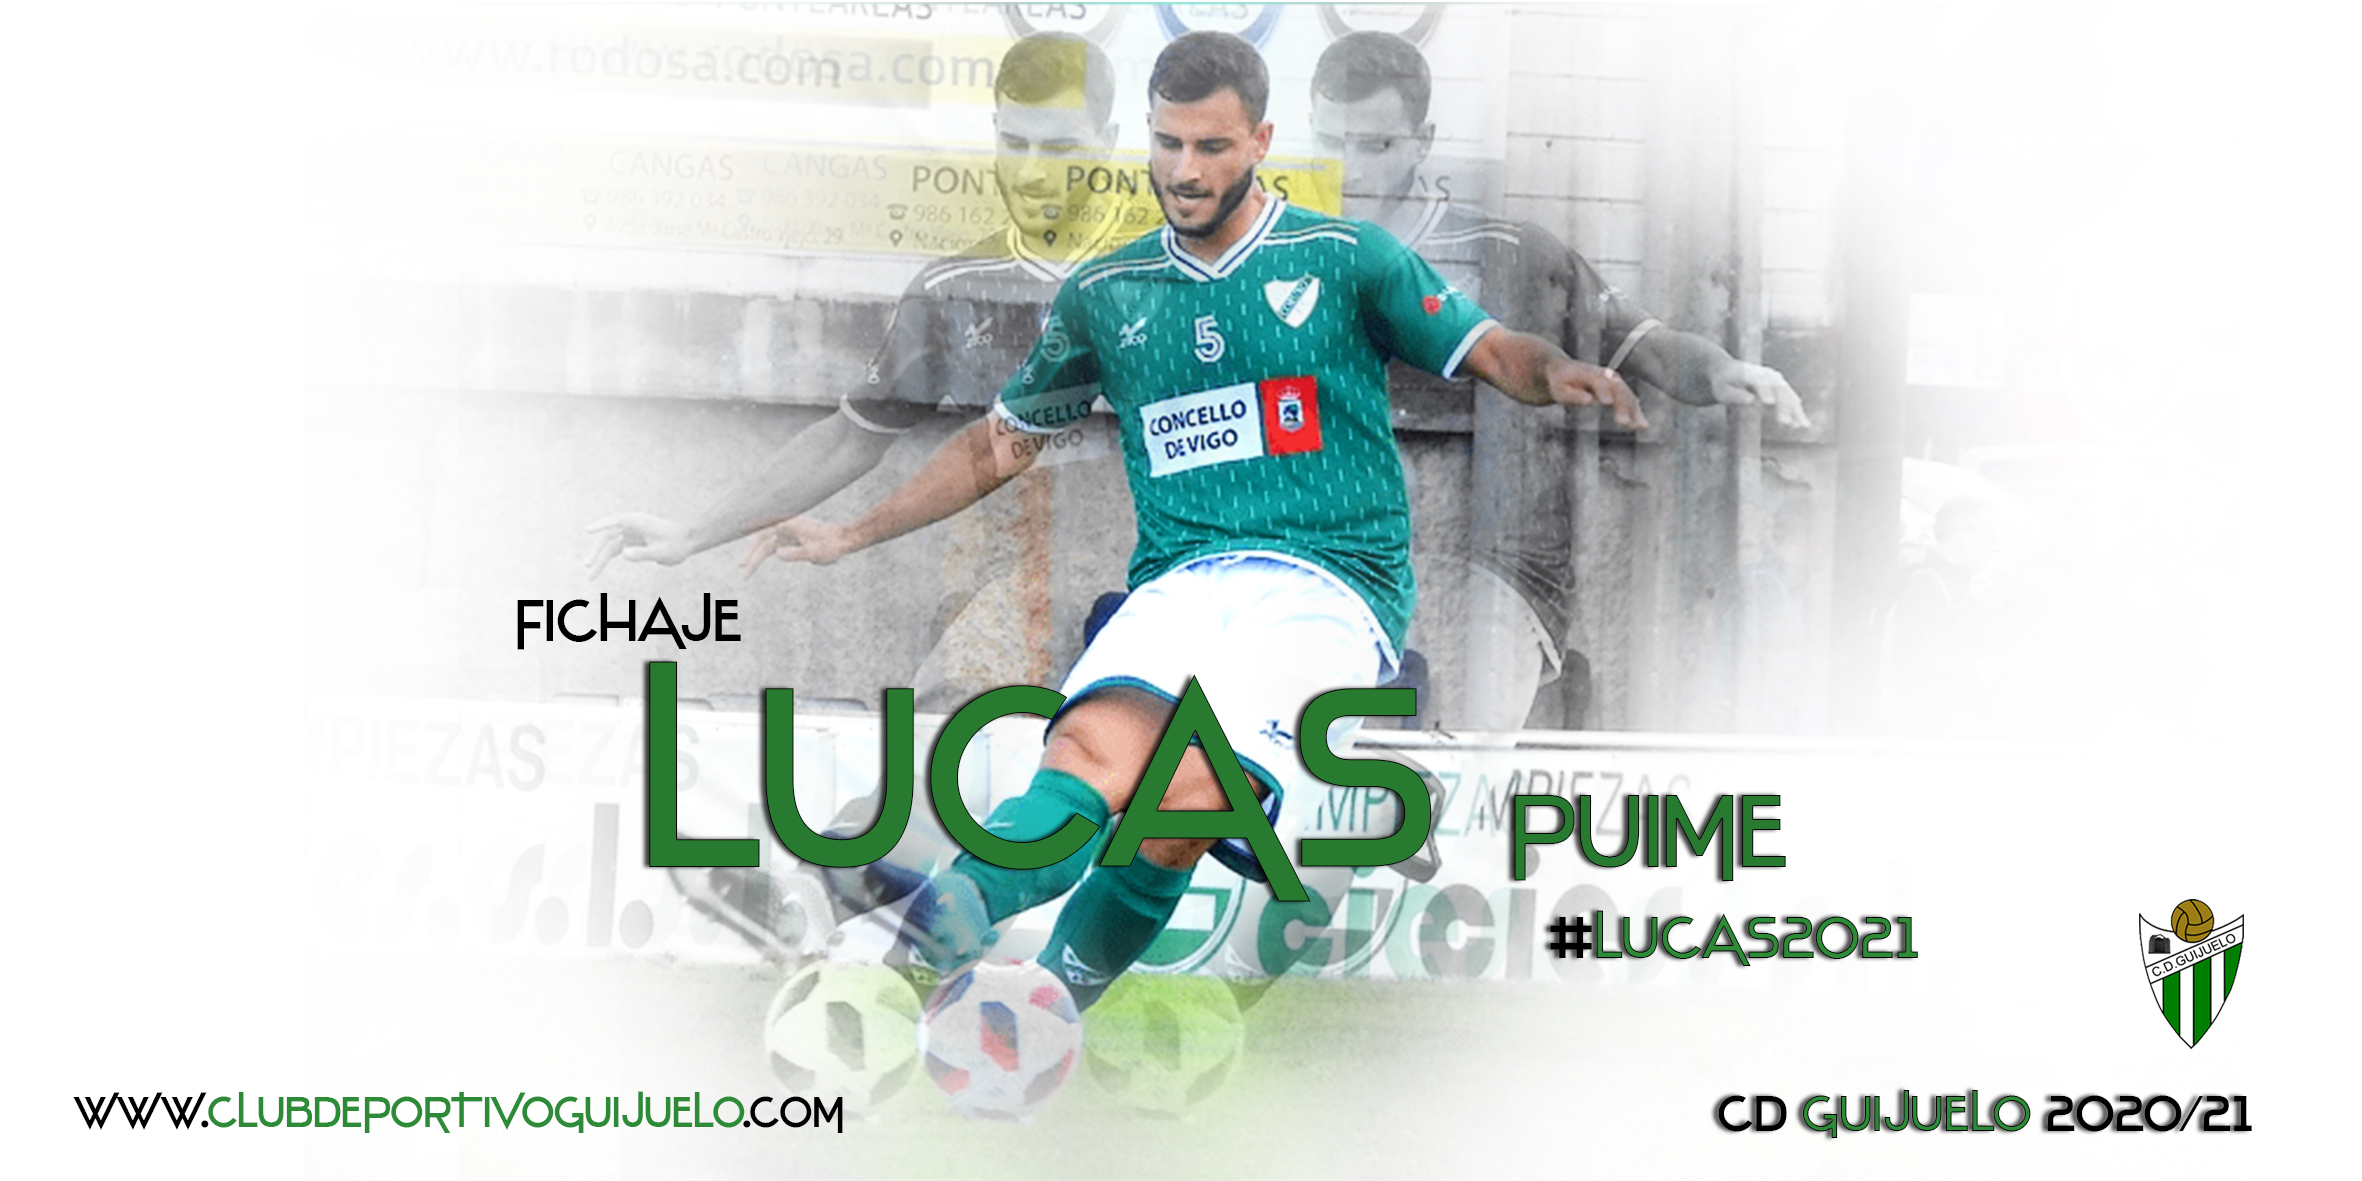 Lucas Puime